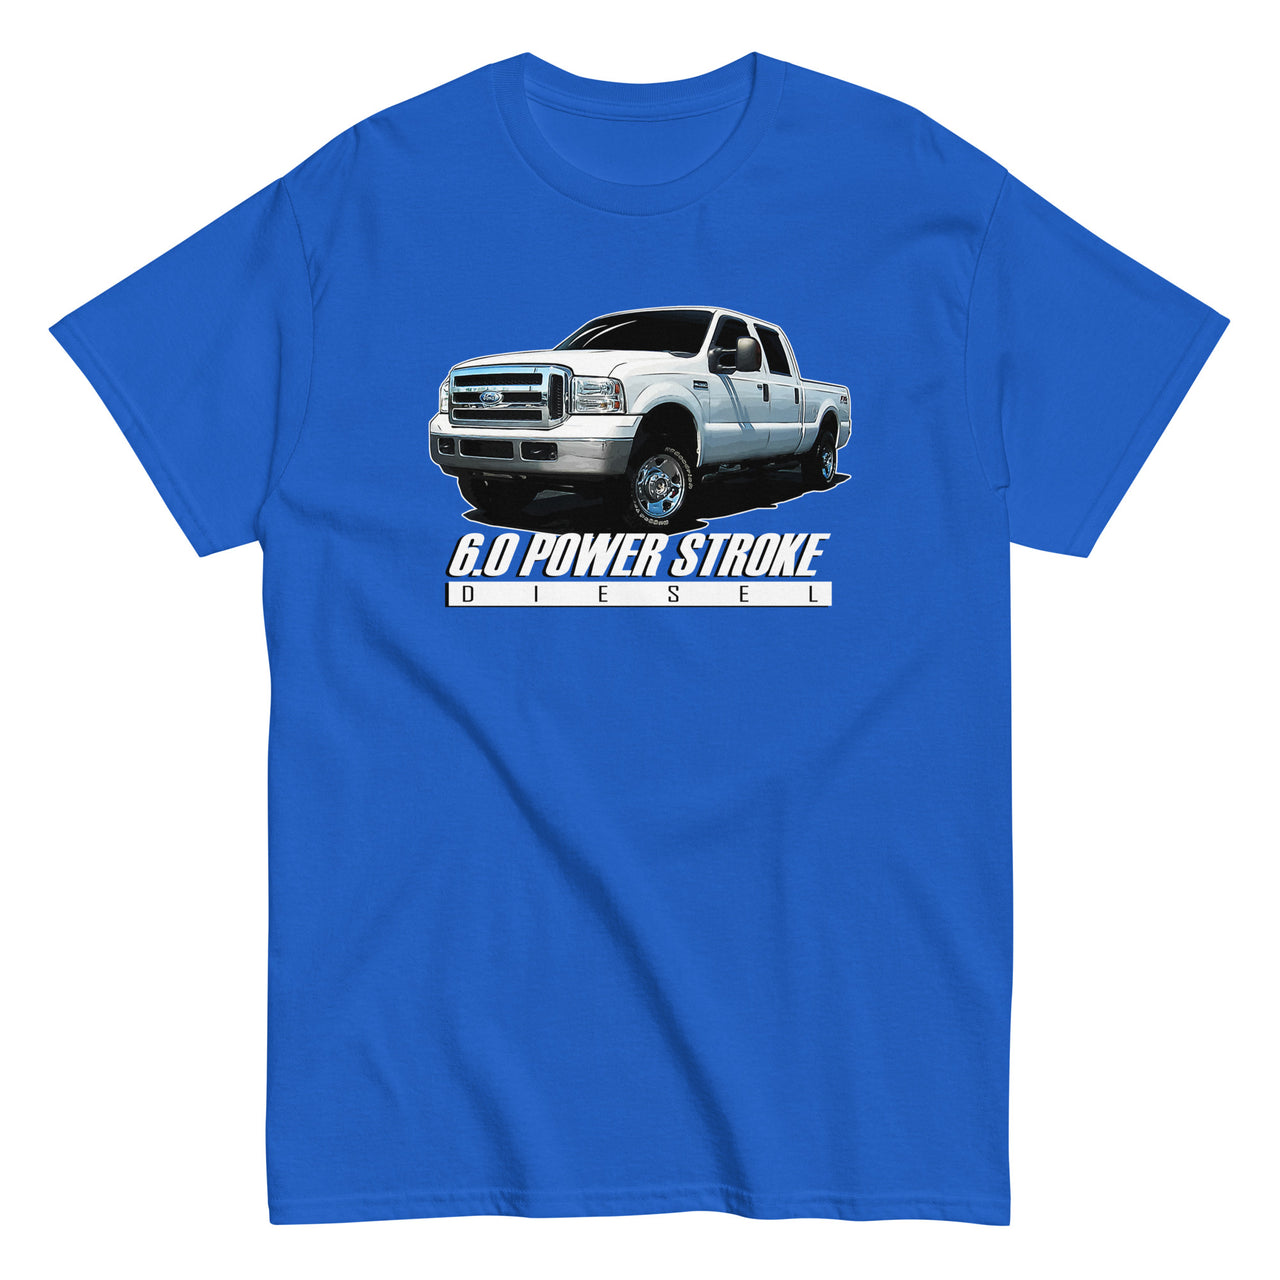 6.0 Power Stroke Diesel T-Shirt in blue